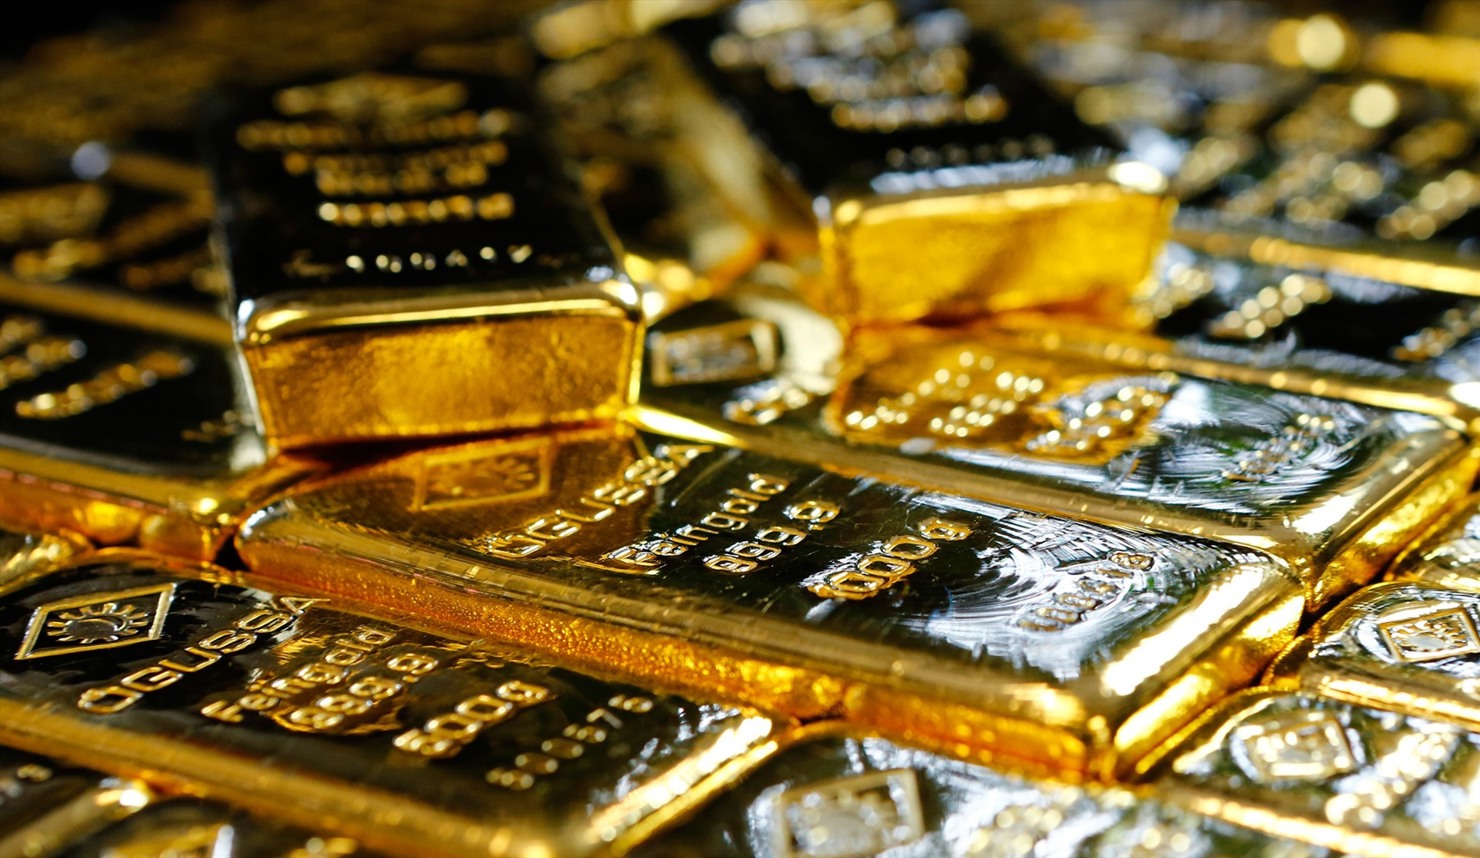 Nhu cầu với vàng đang tăng cao trong bối cảnh thế giới lo ngại về một cuộc khủng hoảng kinh tế bắt nguồn từ khủng hoảng y tế do virus corona gây ra. Nguồn: internet